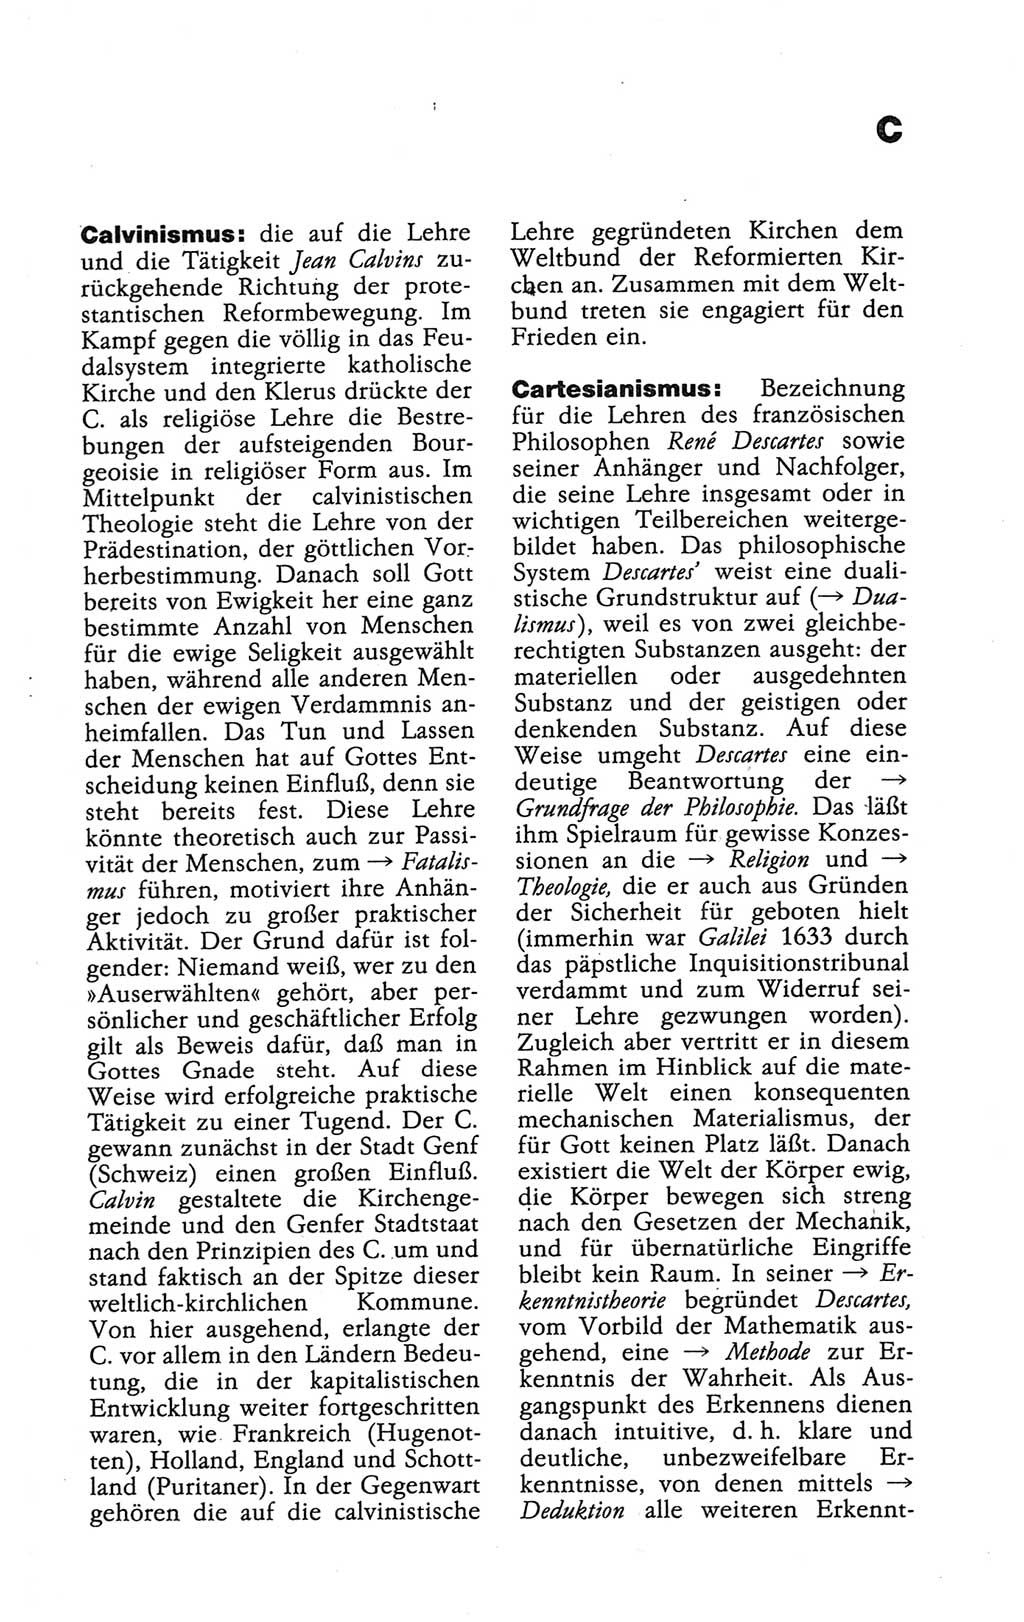 Wörterbuch der marxistisch-leninistischen Philosophie [Deutsche Demokratische Republik (DDR)] 1986, Seite 93 (Wb. ML Phil. DDR 1986, S. 93)